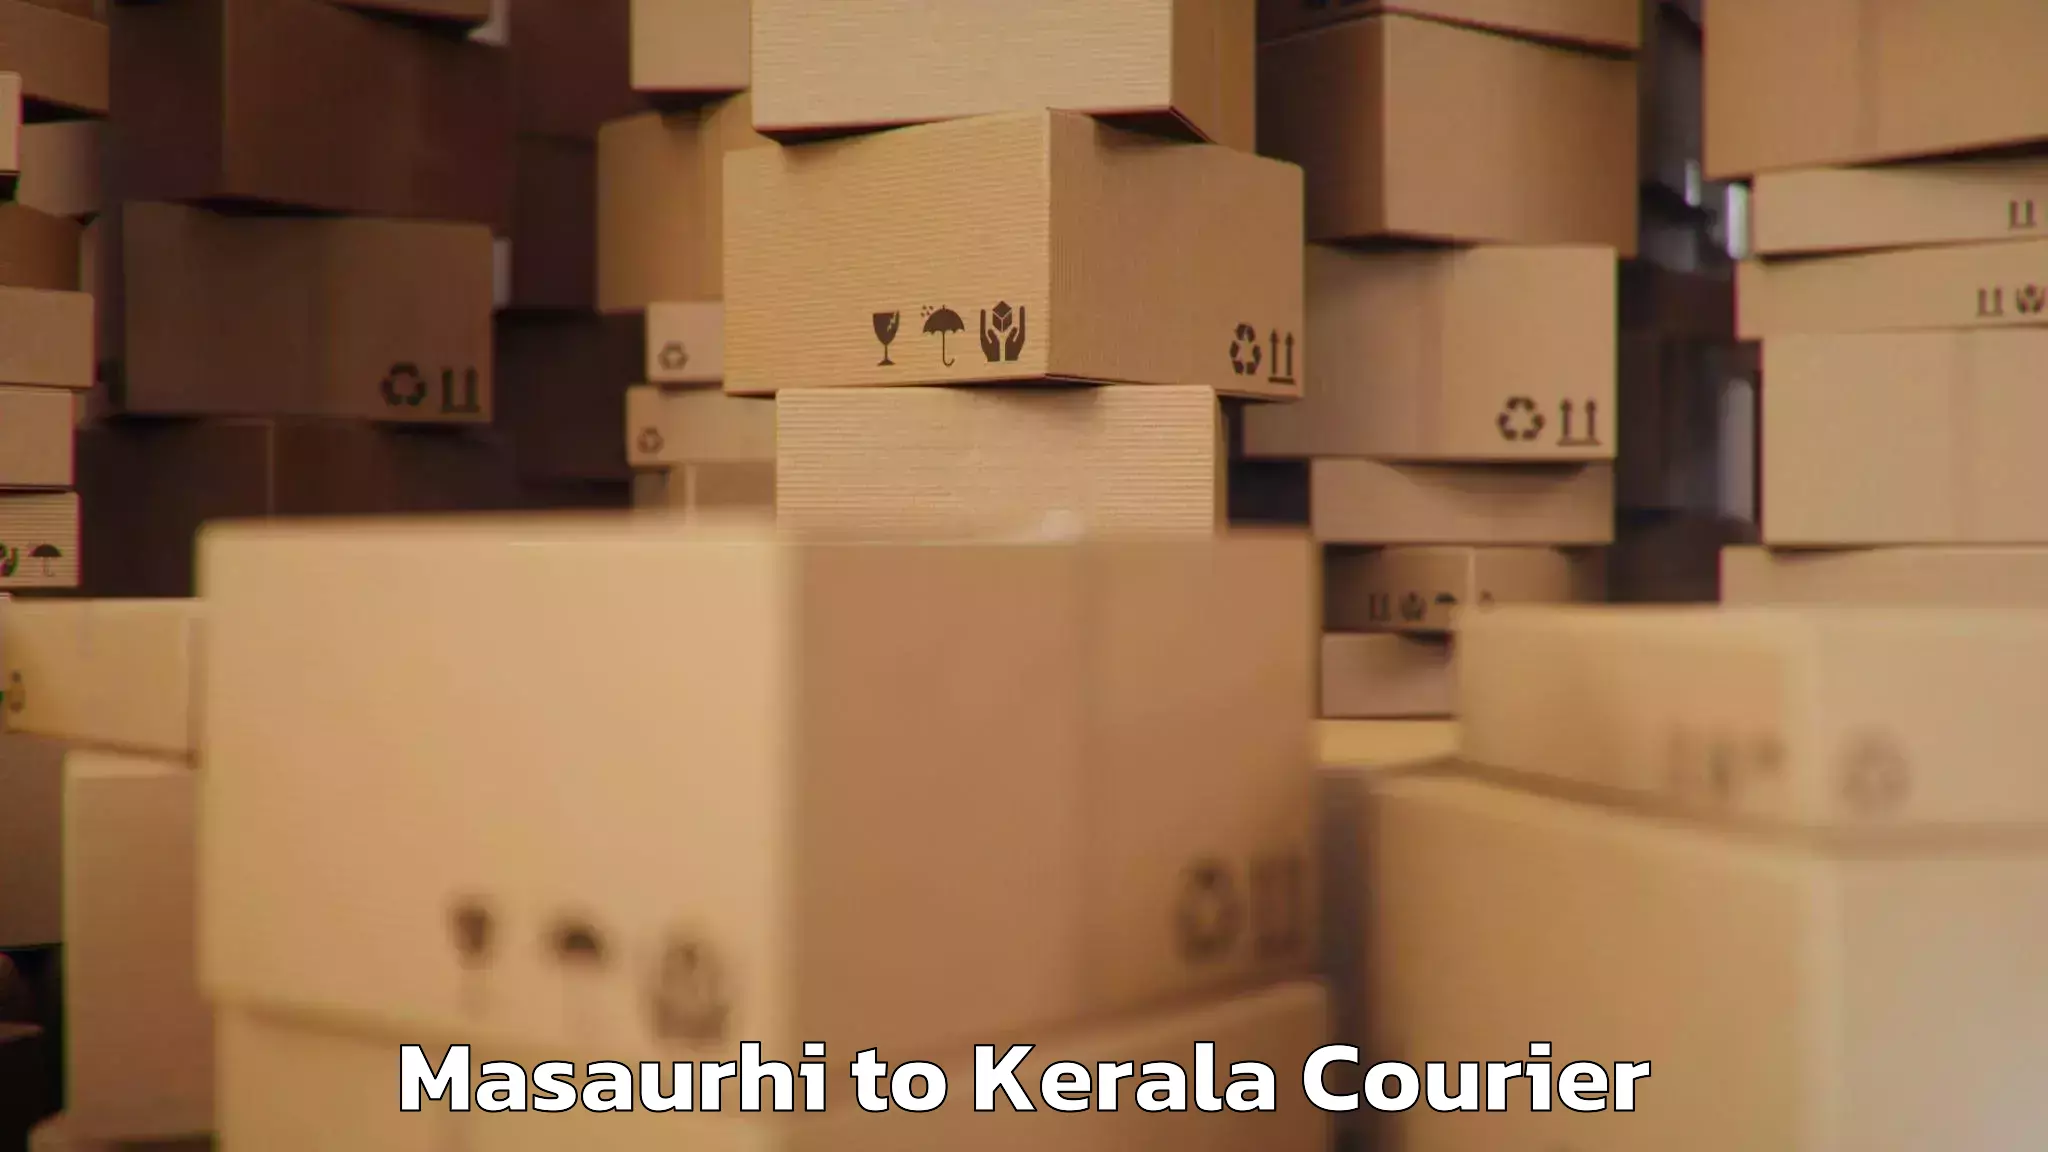 Baggage transport scheduler Masaurhi to Kerala